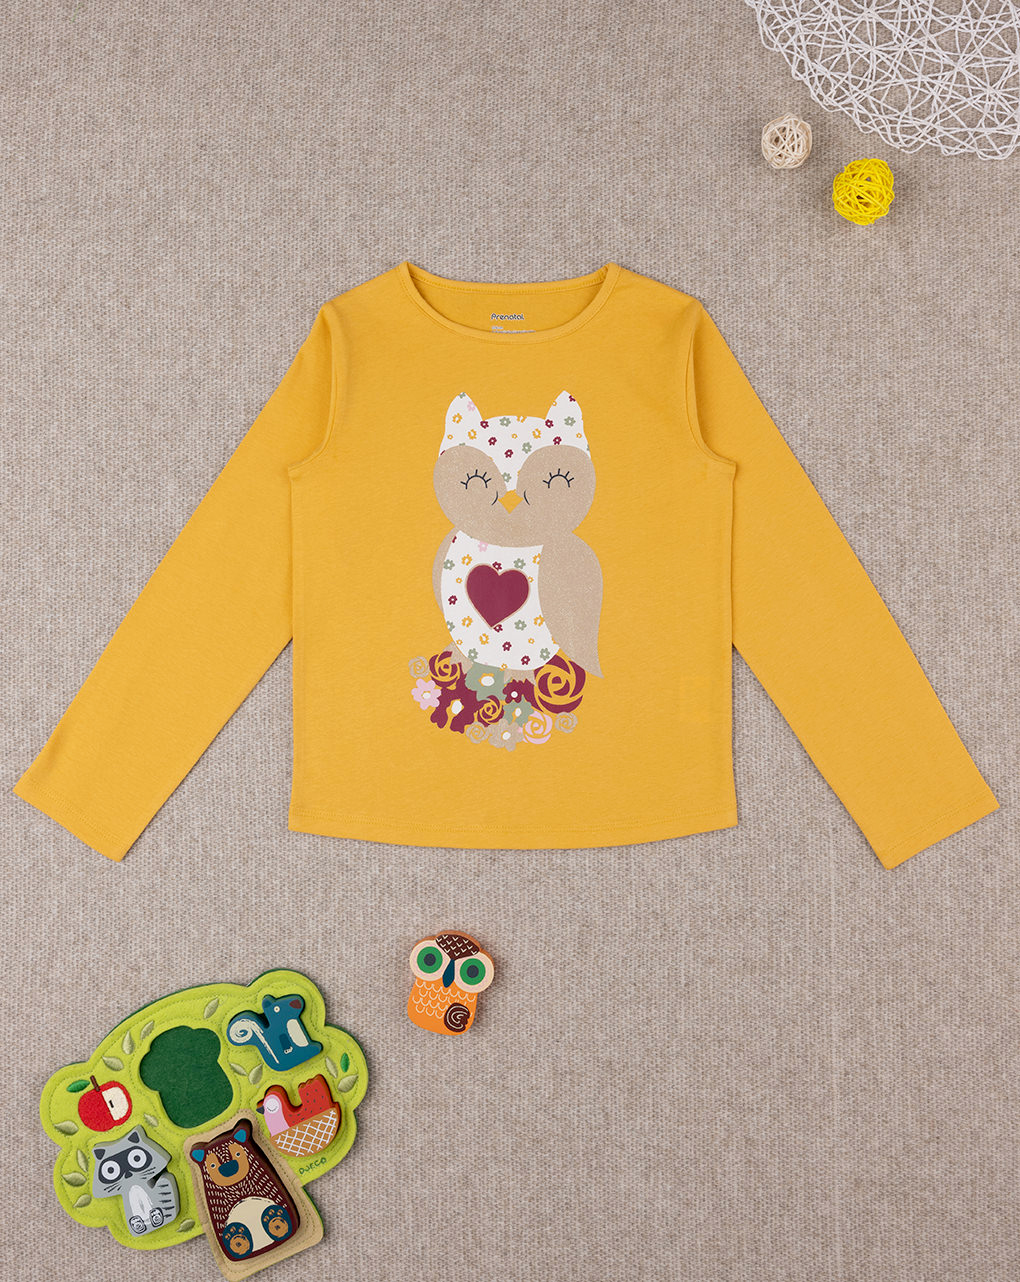 παιδική μπλούζα κίτρινη με κουκουβάγια για κορίτσι